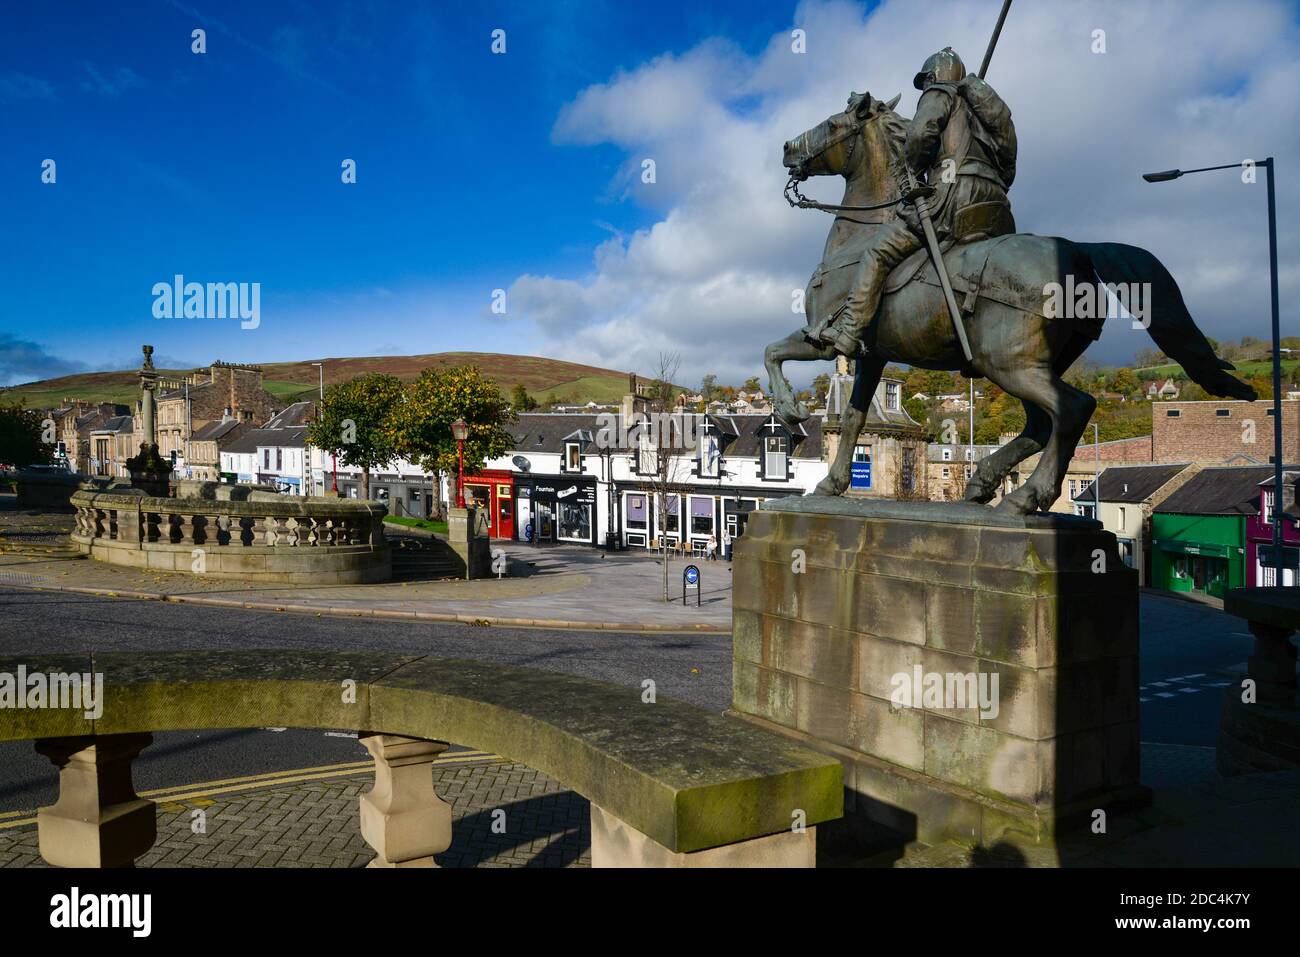 La statue de Border Univers, qui fait partie du mémorial de guerre de Galashiels, une ville aux frontières écossaises, Écosse, Royaume-Uni Banque D'Images